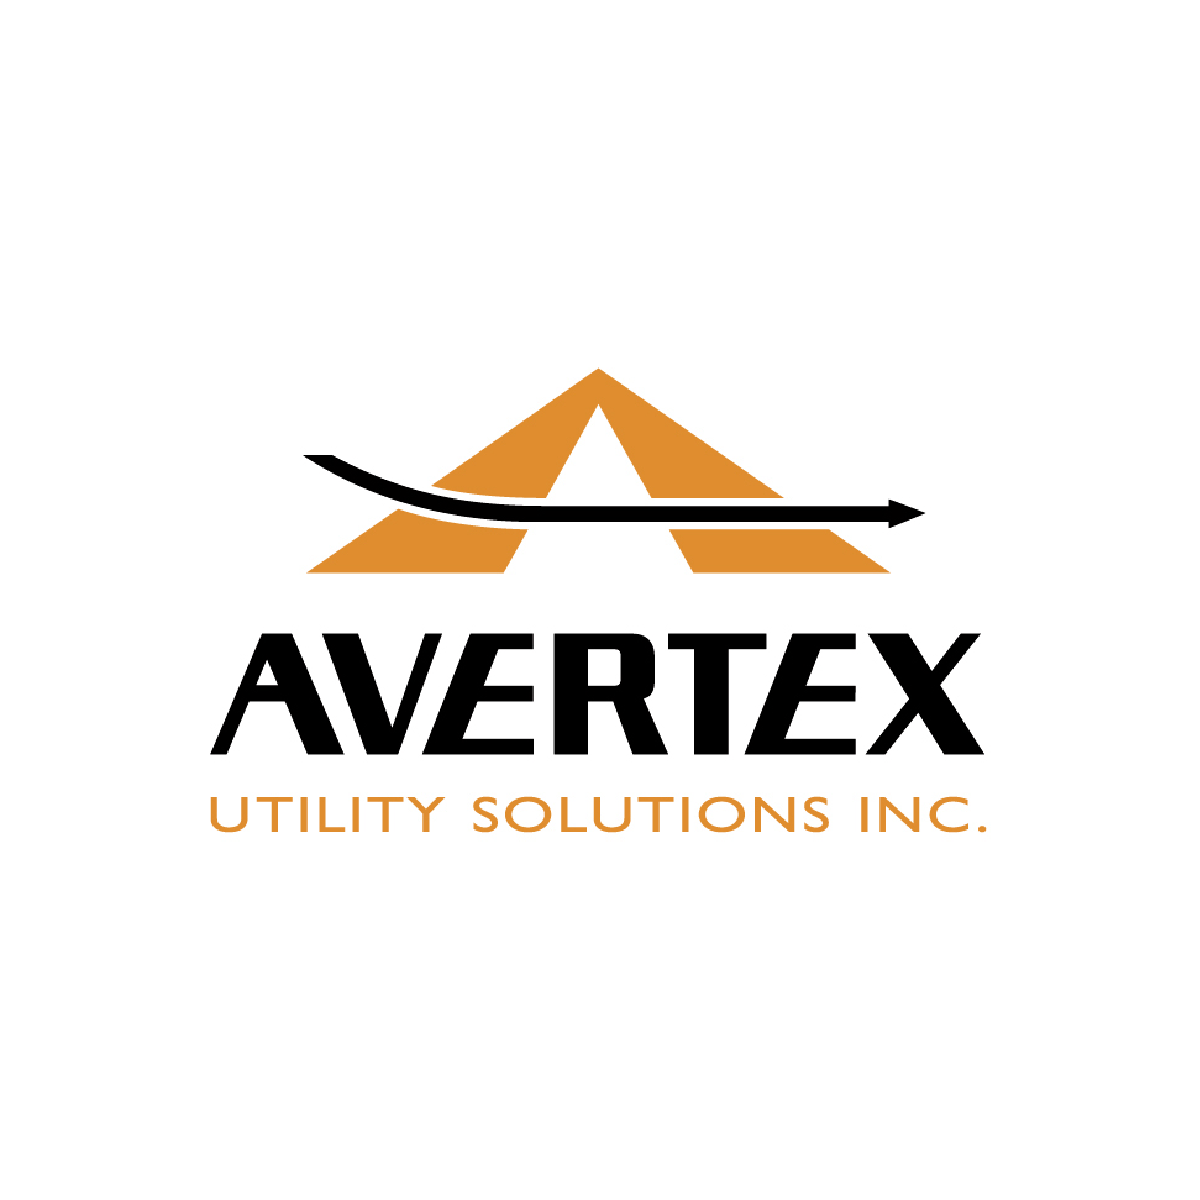 sponsors_avertex